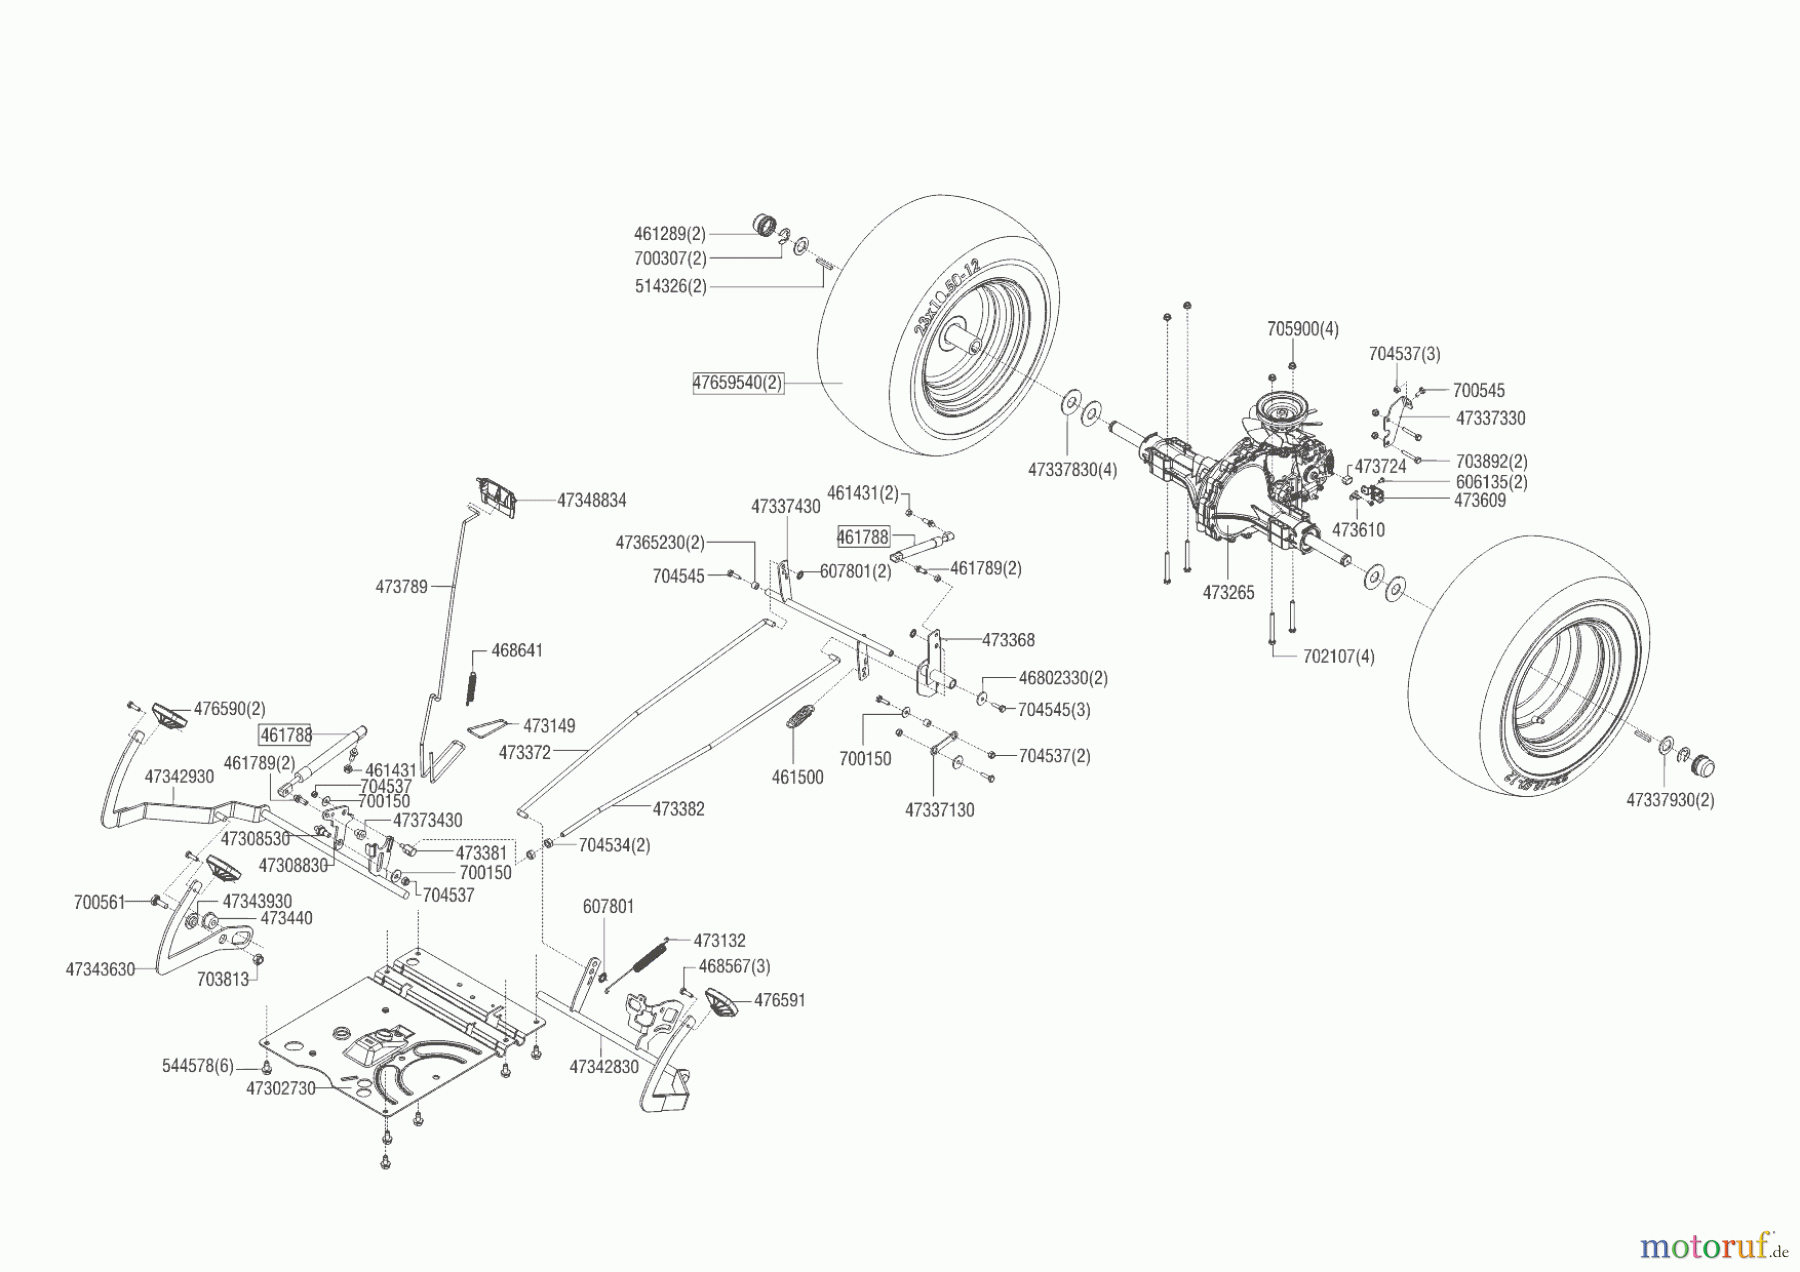  Brill Gartentechnik Rasentraktor Crossover T 125/23 H  ab 05/2015 Seite 4